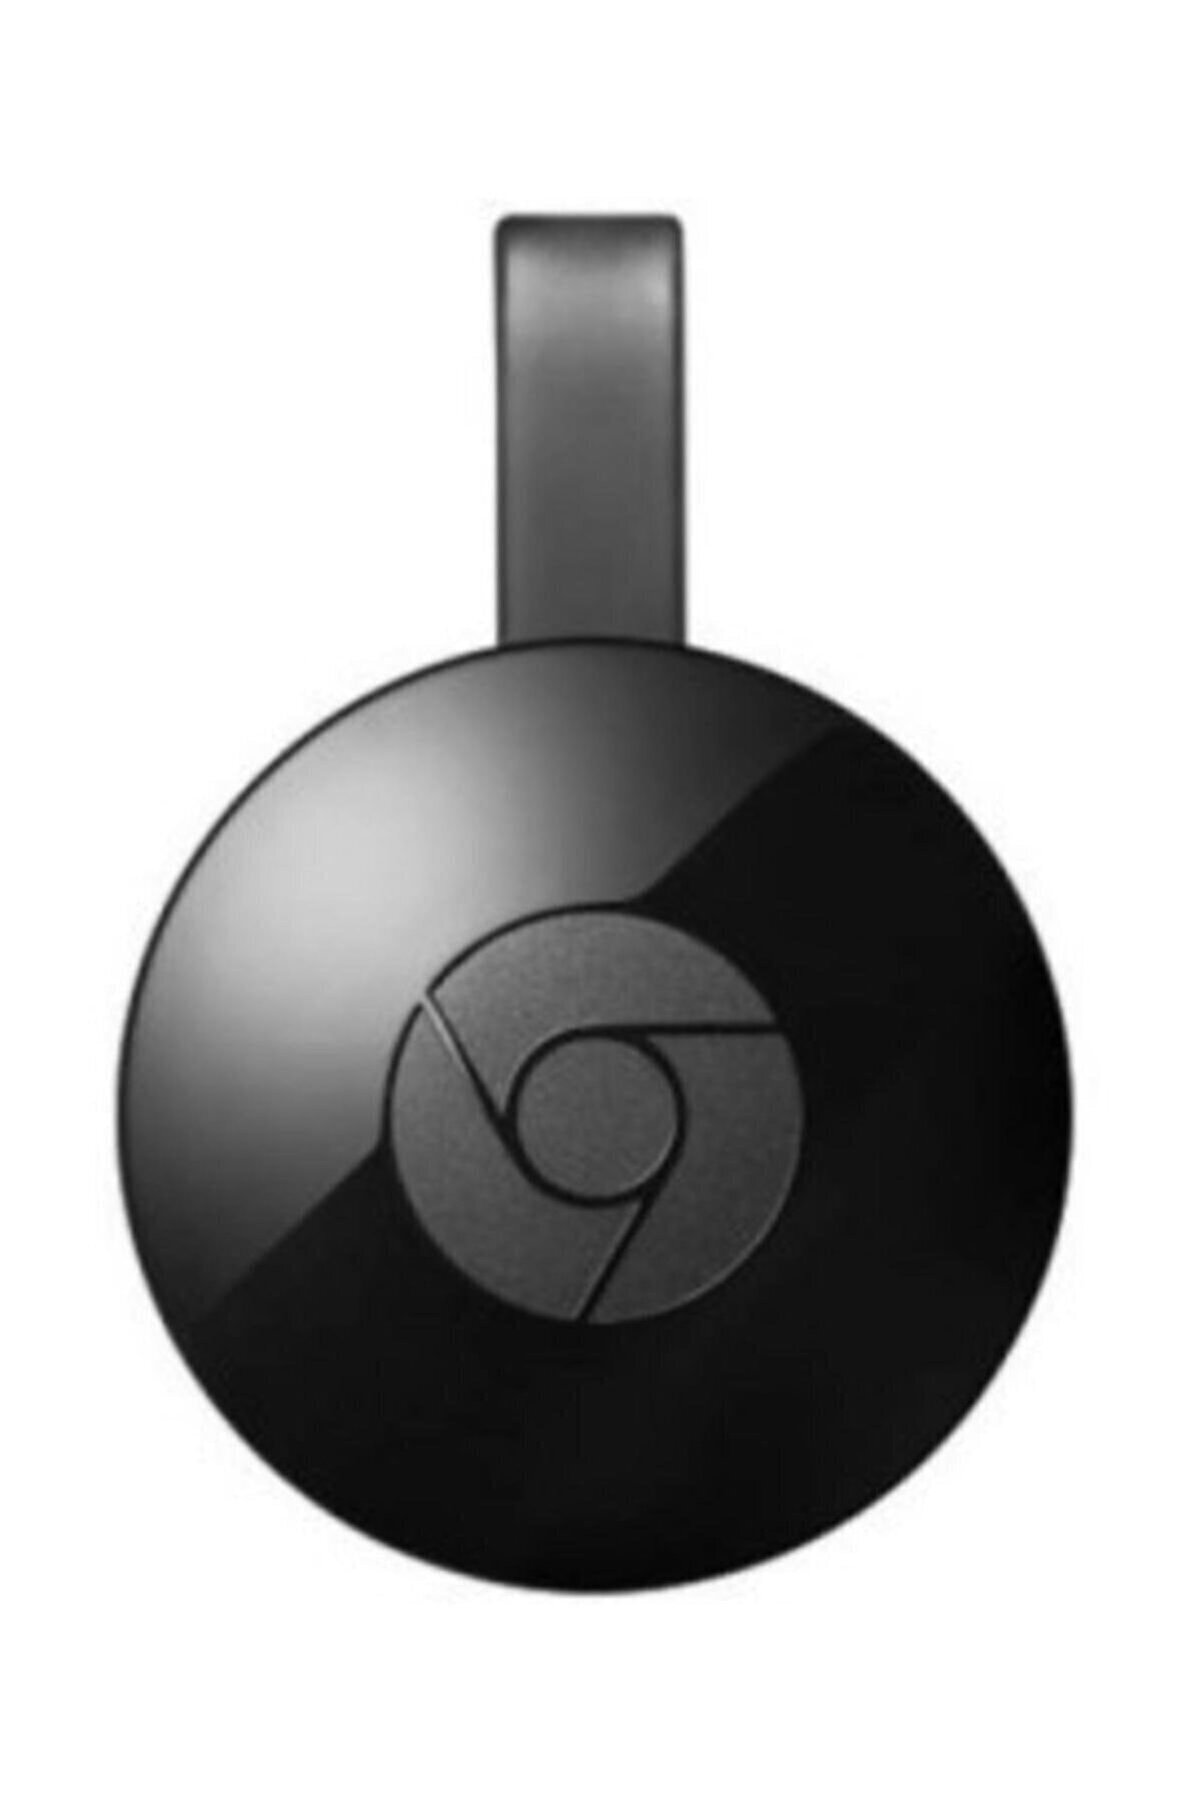 Kingboss Chromecast 4k Wifi Hdmı Görüntü Ve Ses Aktarıcı